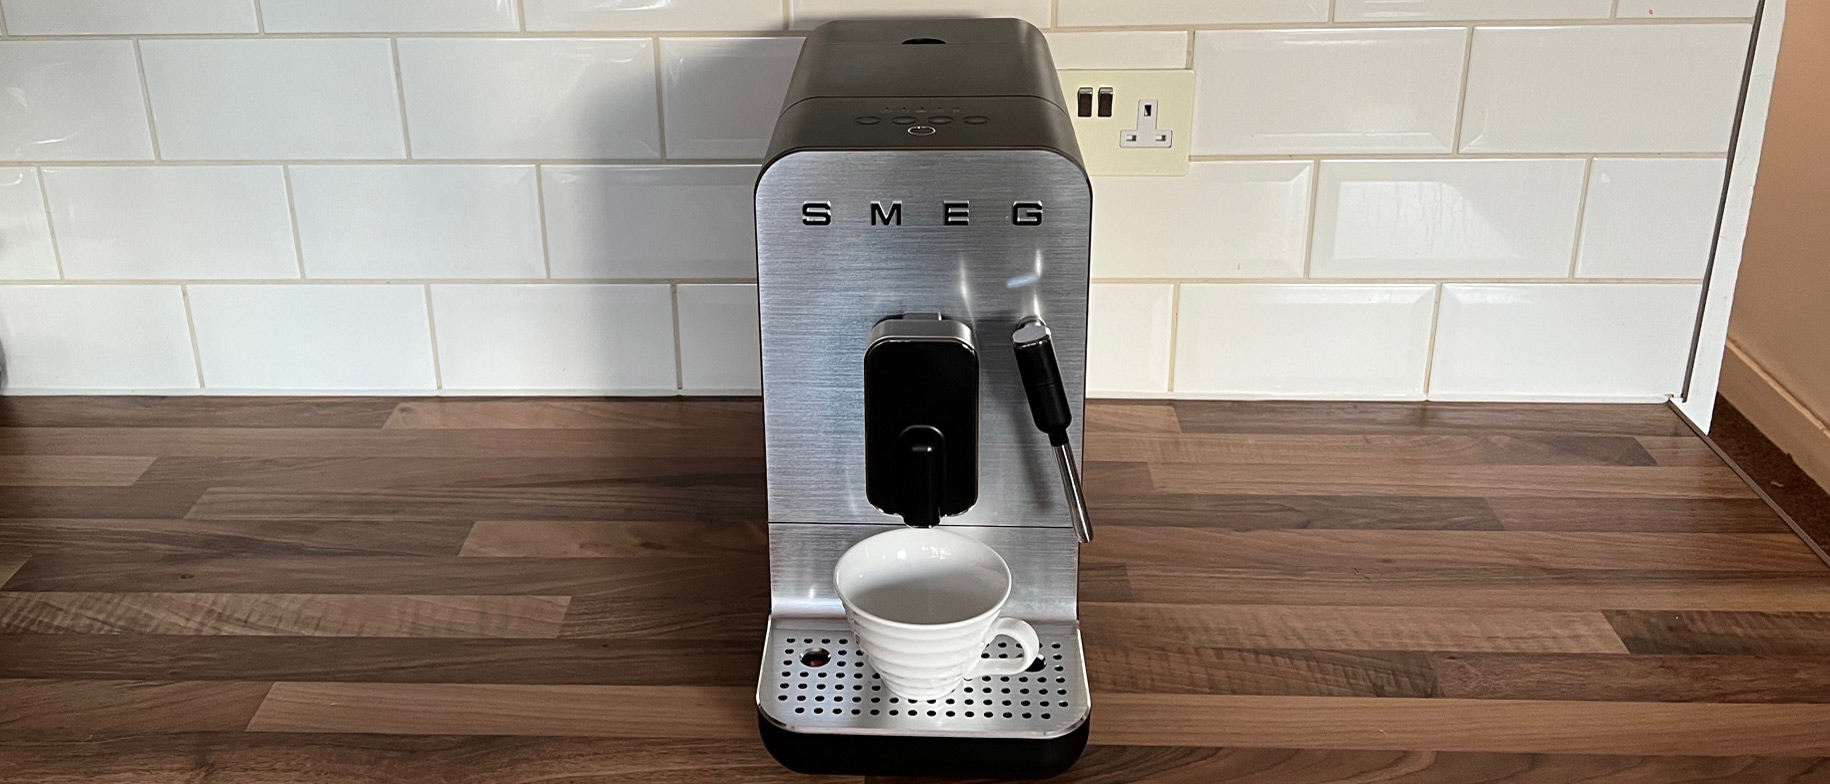 Smeg - Bean To Cup Coffee Machine w/ Milk Frother - Black Matt